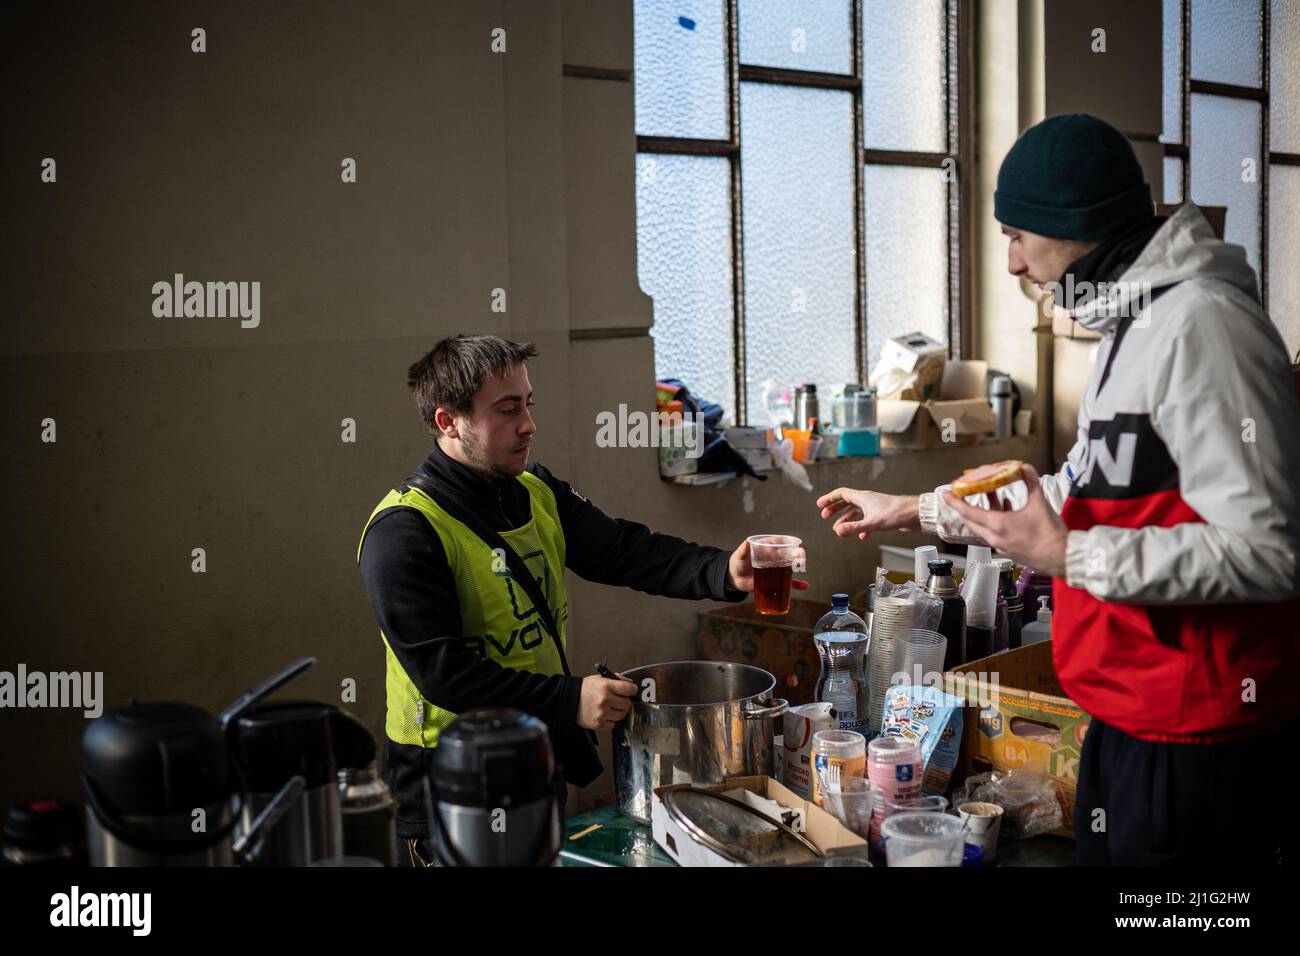 LVIV, UCRANIA - 14 de marzo de 2022: Crisis humanitaria durante la guerra en Ucrania. Los voluntarios que ayudan a alimentar a miles de refugiados huyen del territorio devastado por la guerra Foto de stock